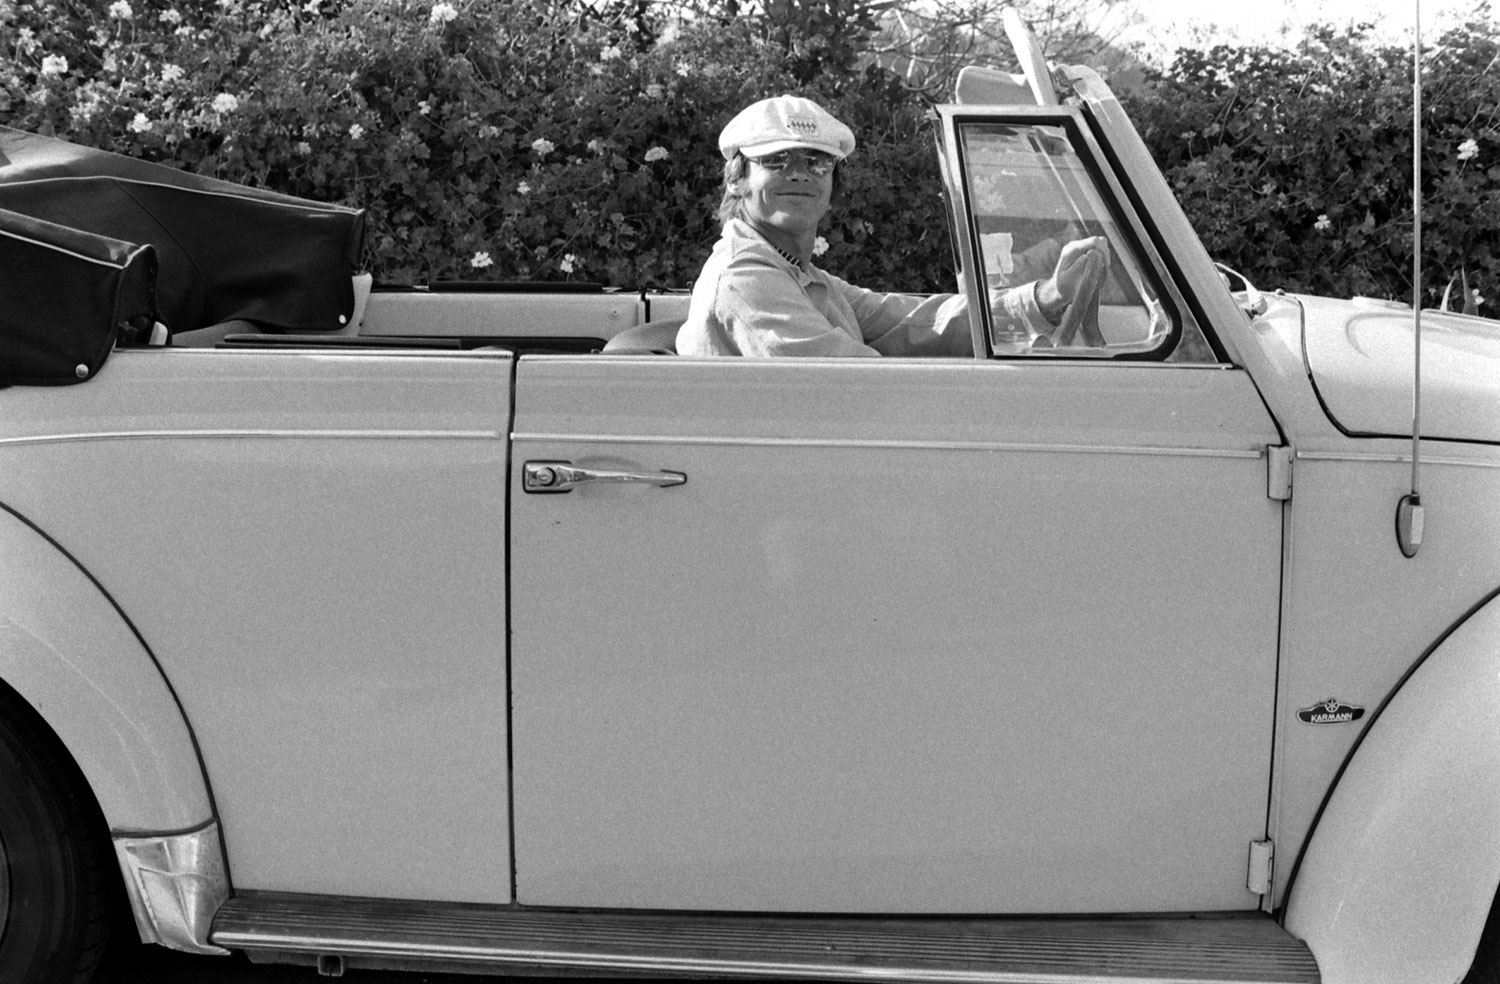 Jack Nicholson driving his Volkswagen convertible in 1969